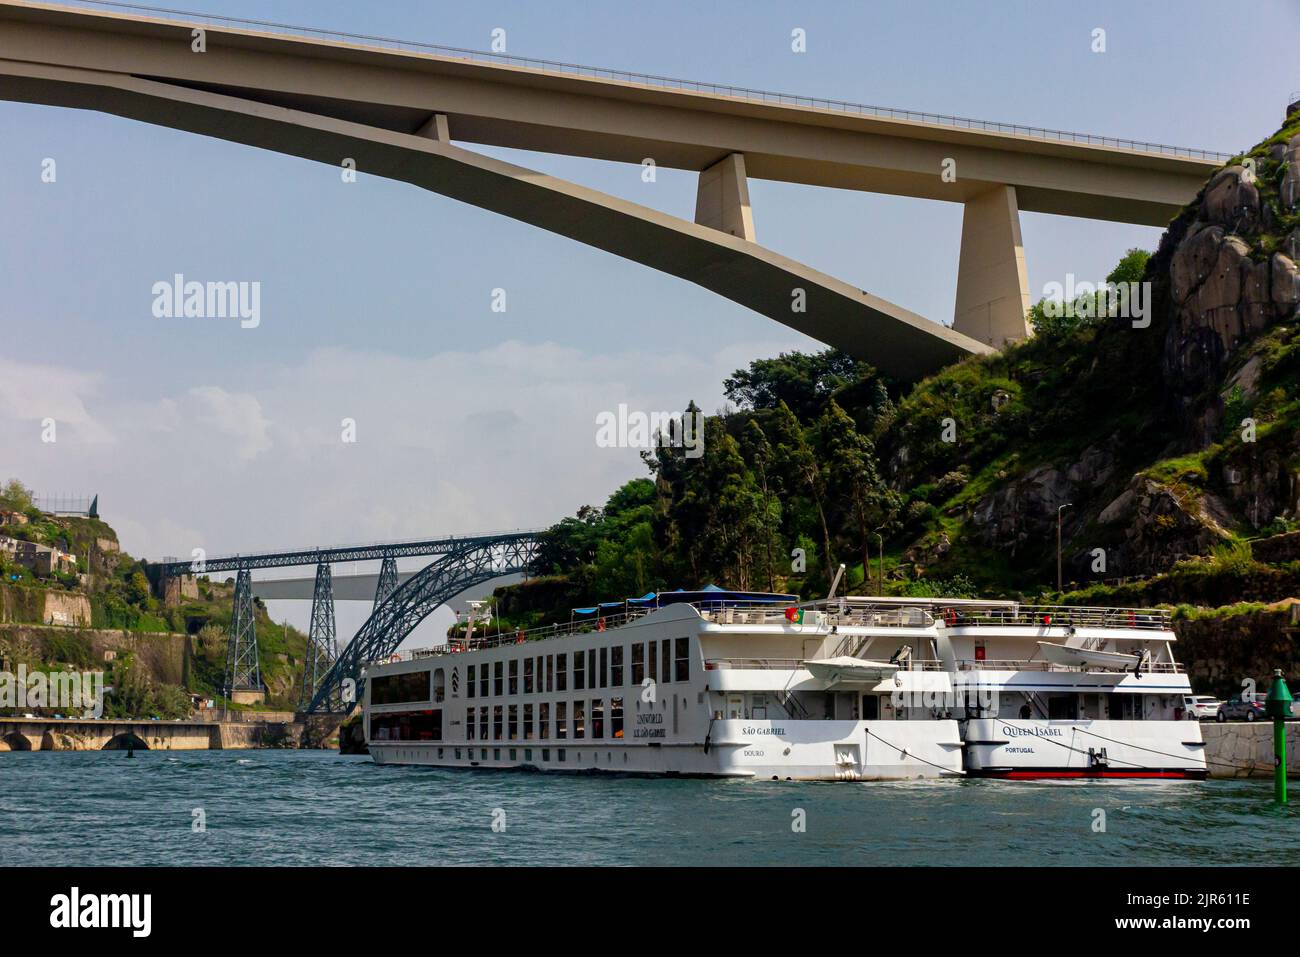 Barche turistiche ormeggiate sul fiume Douro nel centro di Porto, una delle principali città del Portogallo settentrionale. Foto Stock